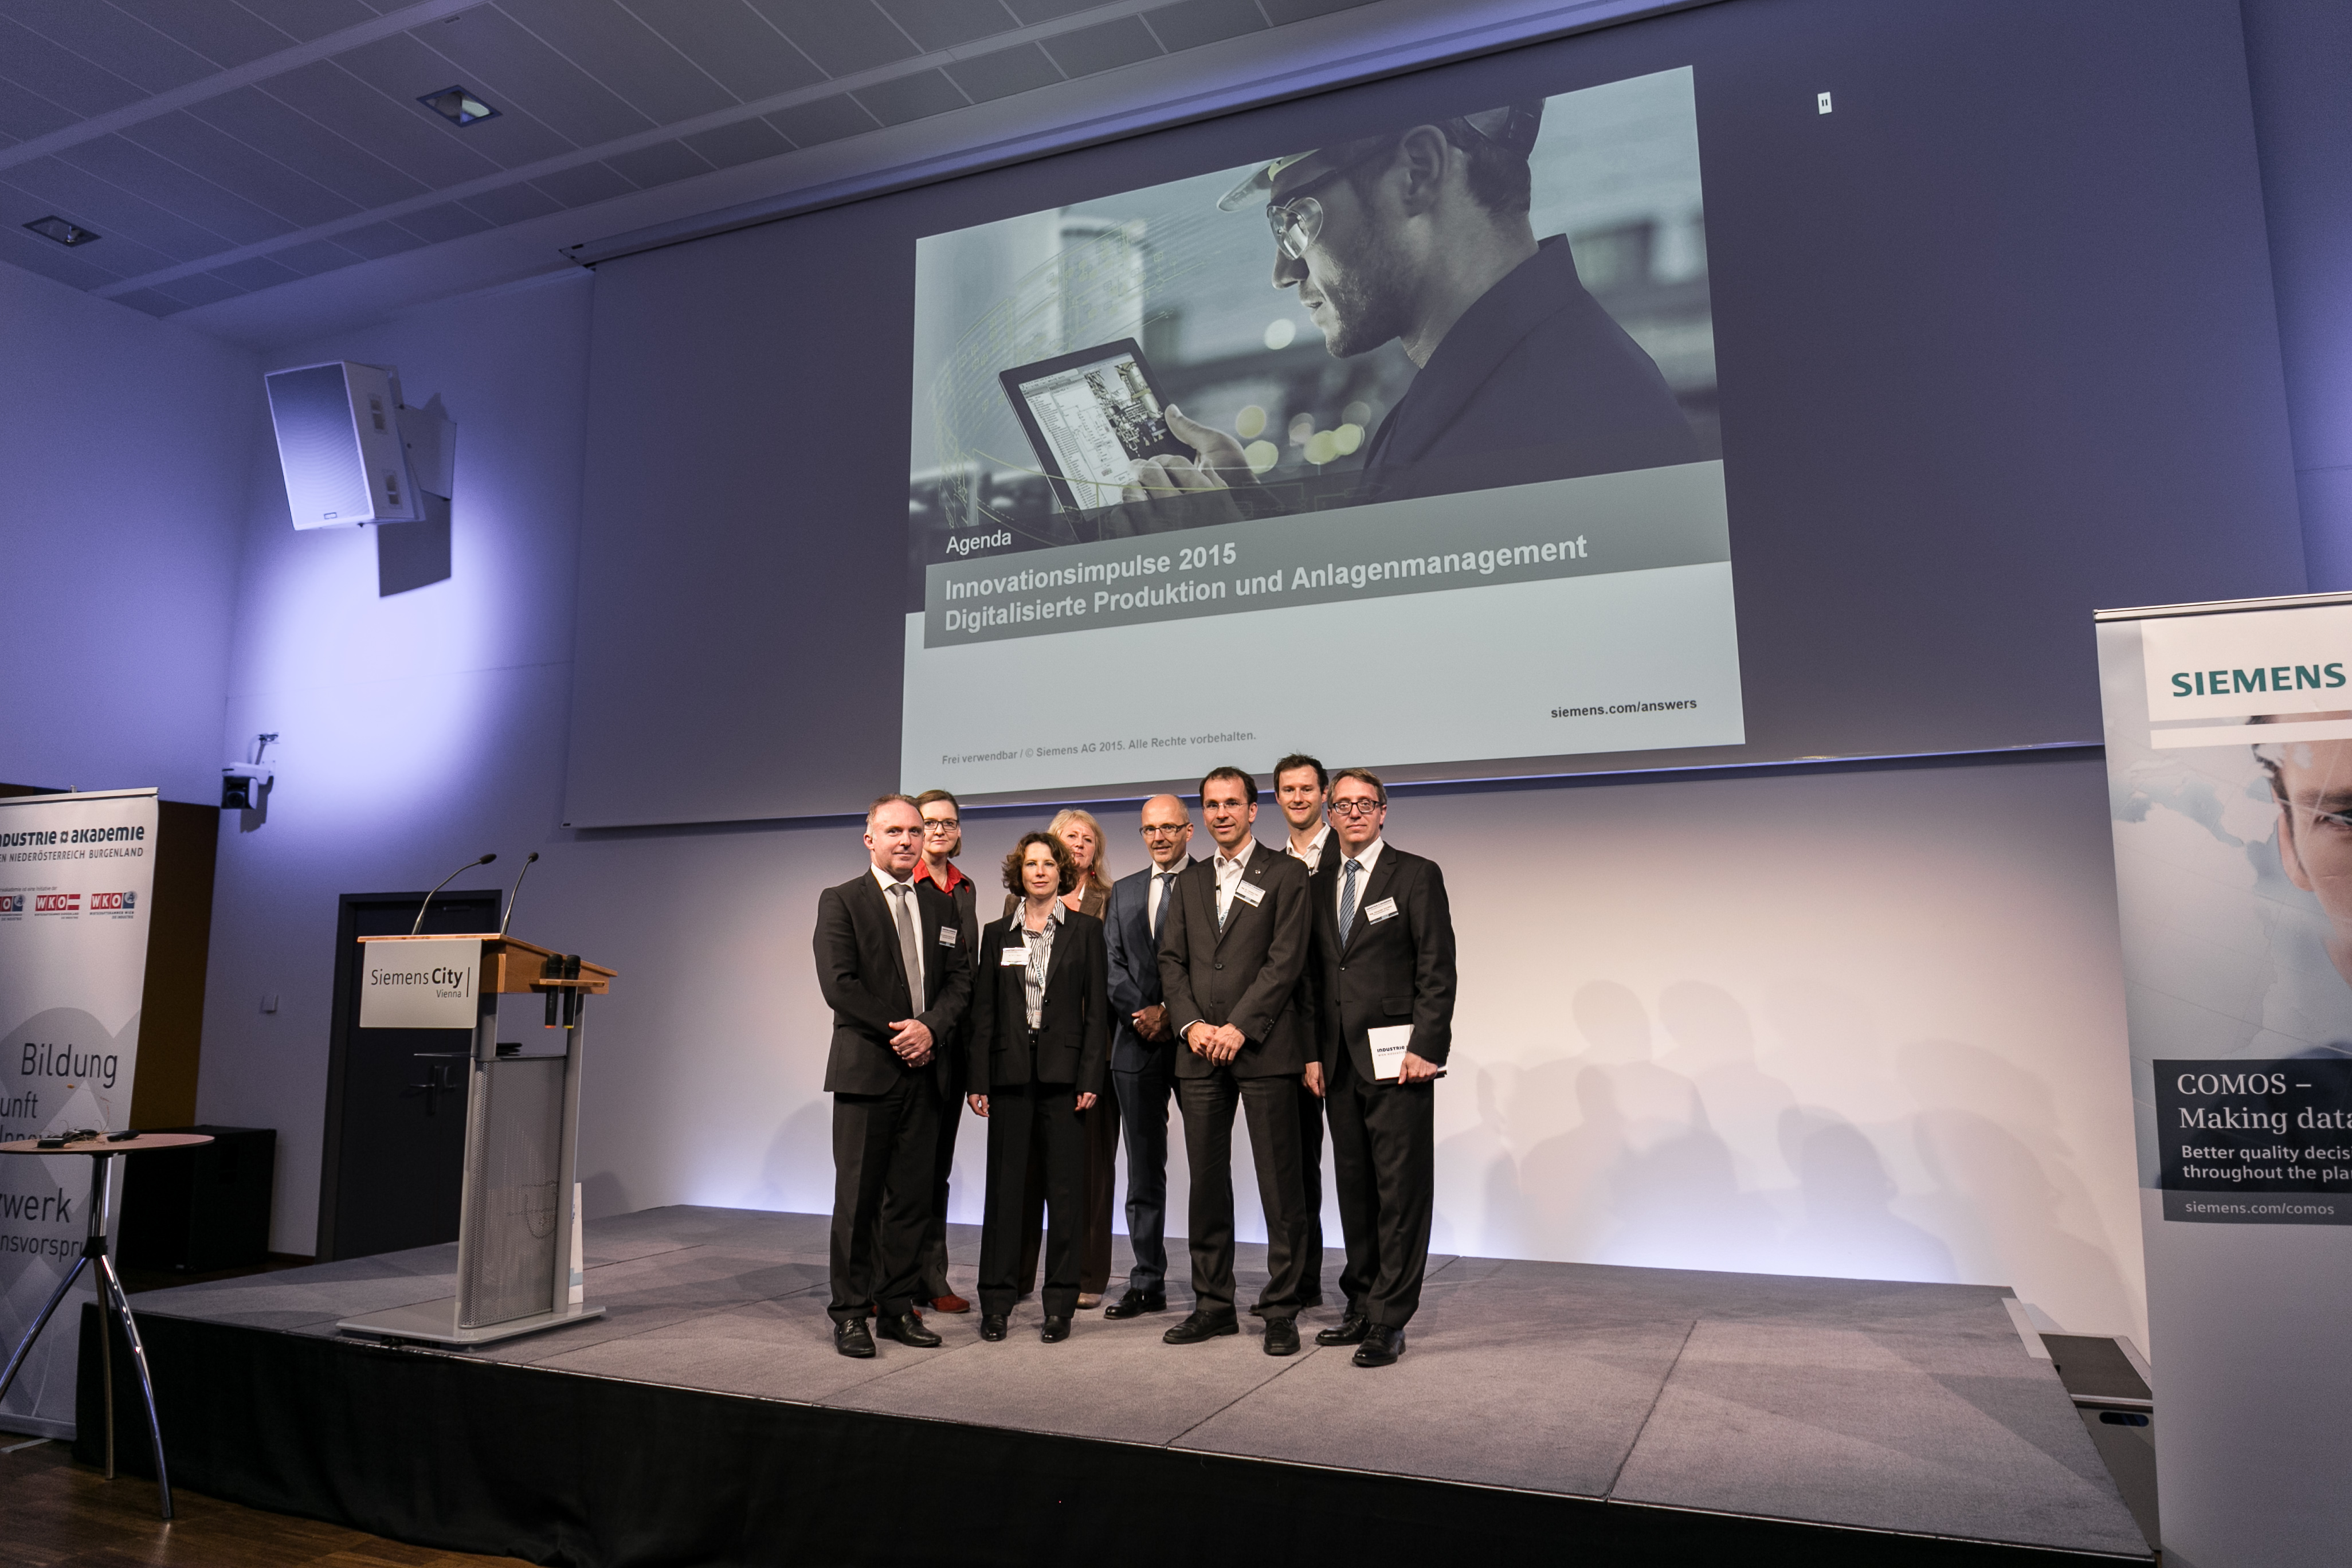 Veranstaltung DIGITALISIERTE PRODUKTION UND ANLAGENMANAGEMENT bei Siemens am 5.11.2015